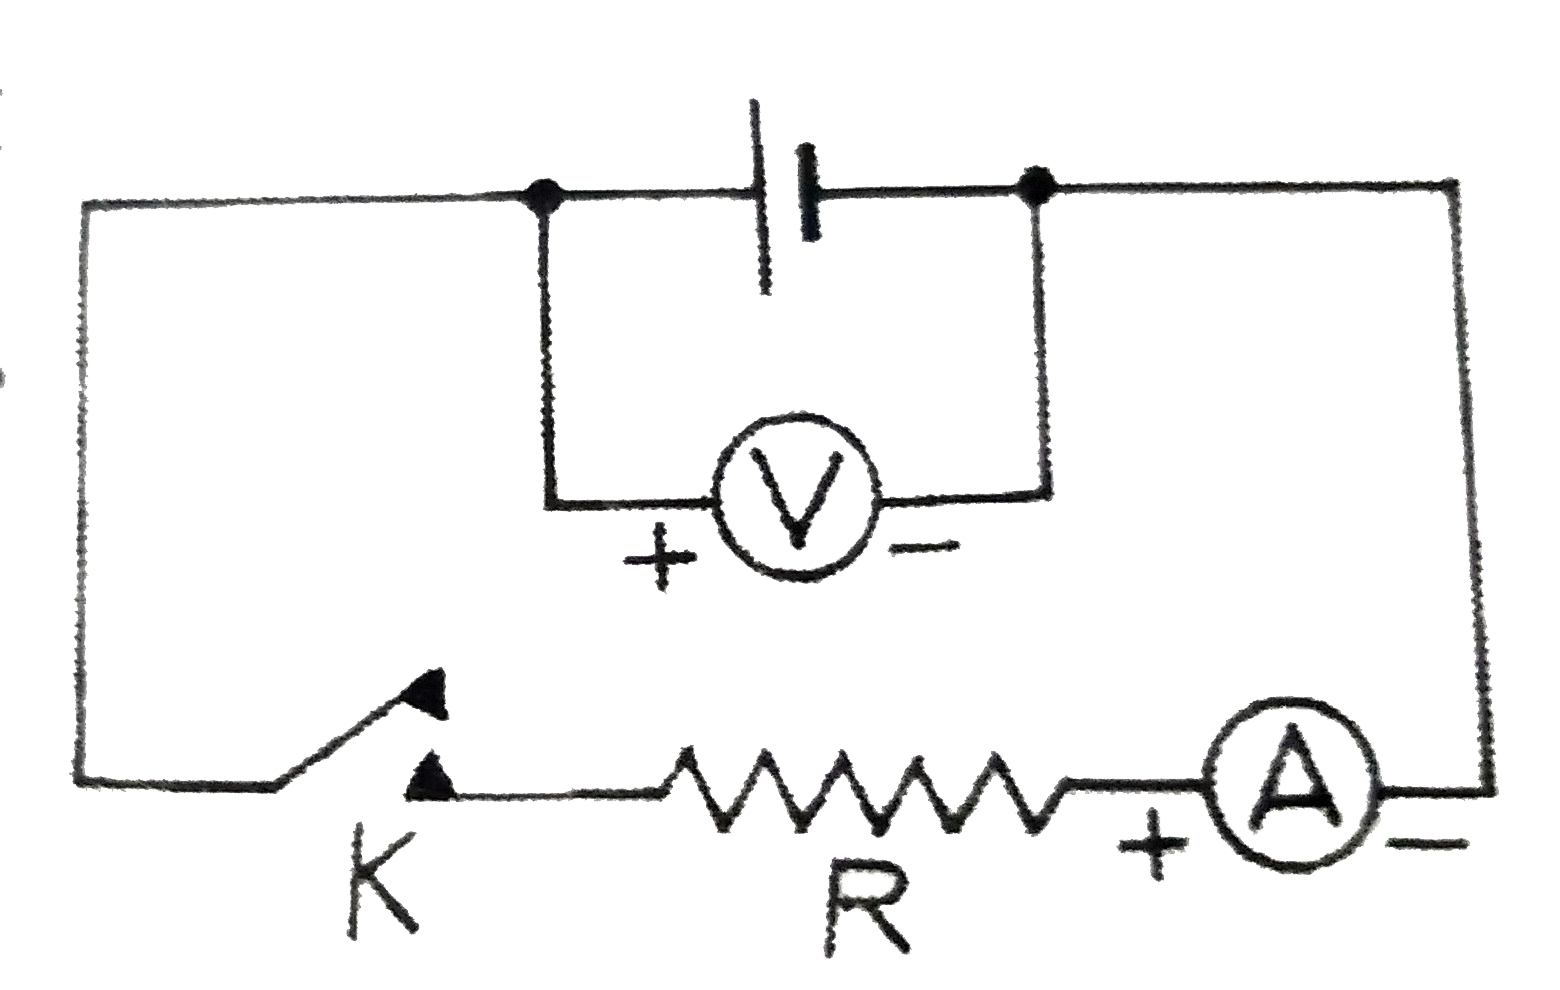 निम्न परिपथ में अमीटर A का प्रतिरोध नगण्य है तथा वोल्टमीटर  V  का प्रतिरोध  बहुत  उच्च  है । कुंजी  K   खुली  पर वोल्टमीटर  का पाठ्यांक 1.53   वोल्ट है । कुंजी बंद करने पर अमीटर का पाठ्यांक  ऐम्पियर आता है  तथा  वोल्टमीटर का गिरकर 1.03    वोल्ट रह जाता है । ज्ञात कीजिए :   (i) सेल का  विधुत वाहक बल E ,   (ii) सेल का  आंतरिक प्रतिरोध r,   (iii) R का मान तथा (iv) सेल से ली गई ऊर्जा का प्रतिरोध R  में प्रतिशत  R में प्रतिशत  ऊर्जा  - क्षय ।